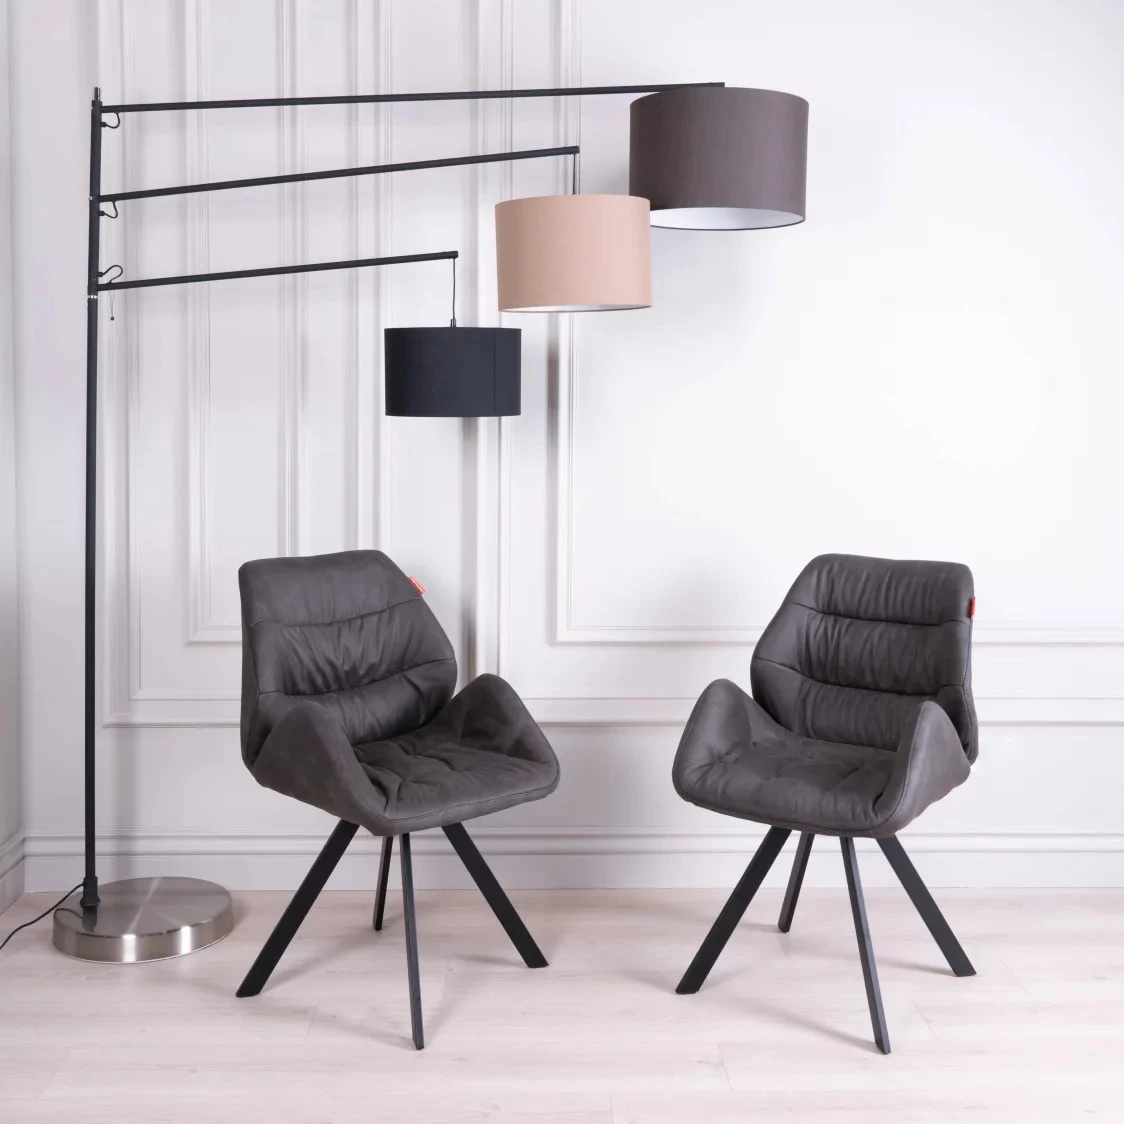 Master Design Hotel Luxury Dining Room Furniture Modern Italian Style Upholstery Factory Fabric Velvet Upholstered Chair